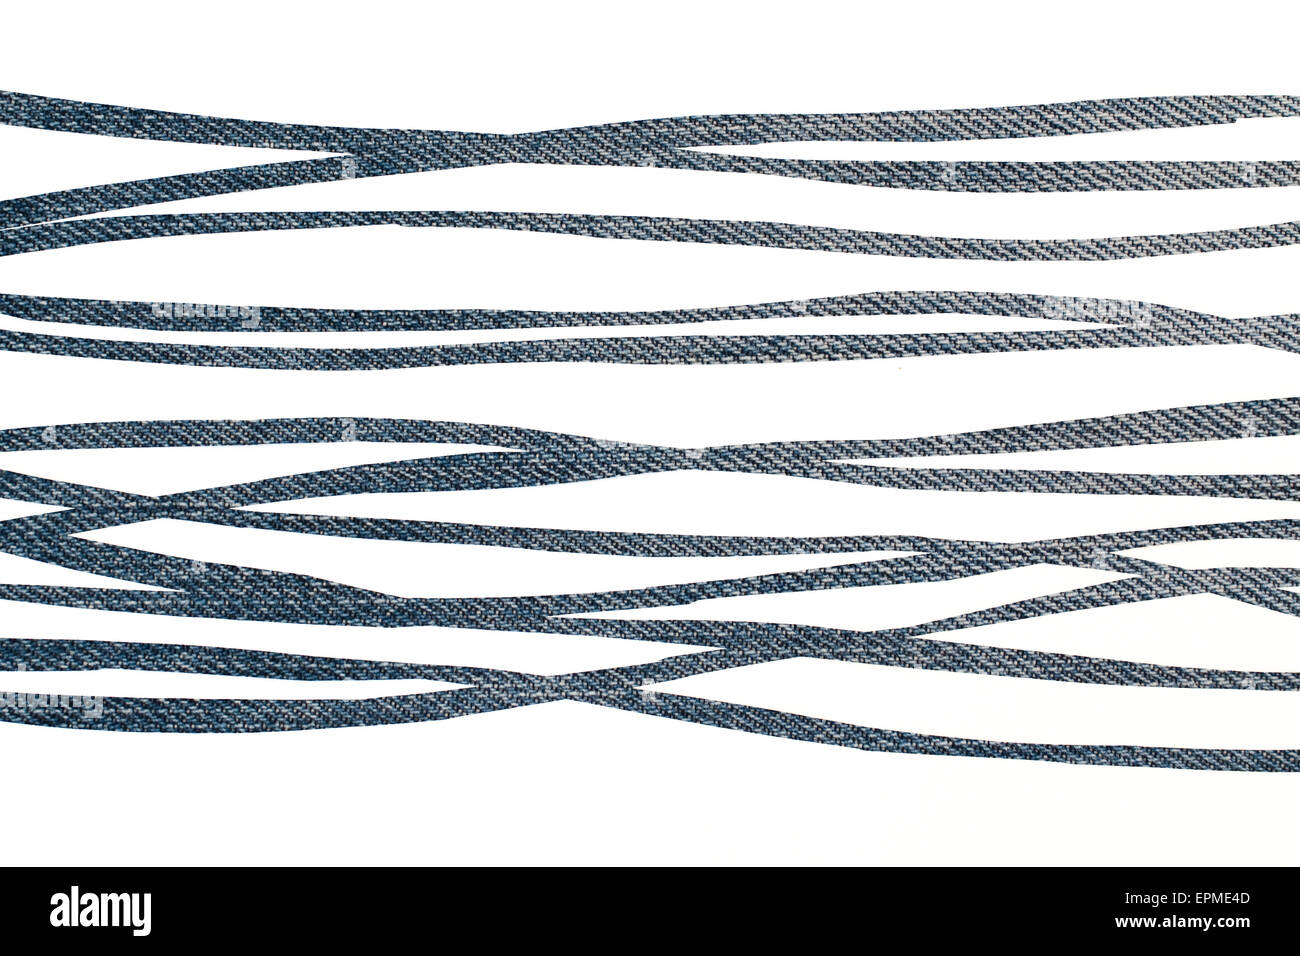 Zebrastreifen auf Jeans Textur - Grafik Hintergrund Stockfoto